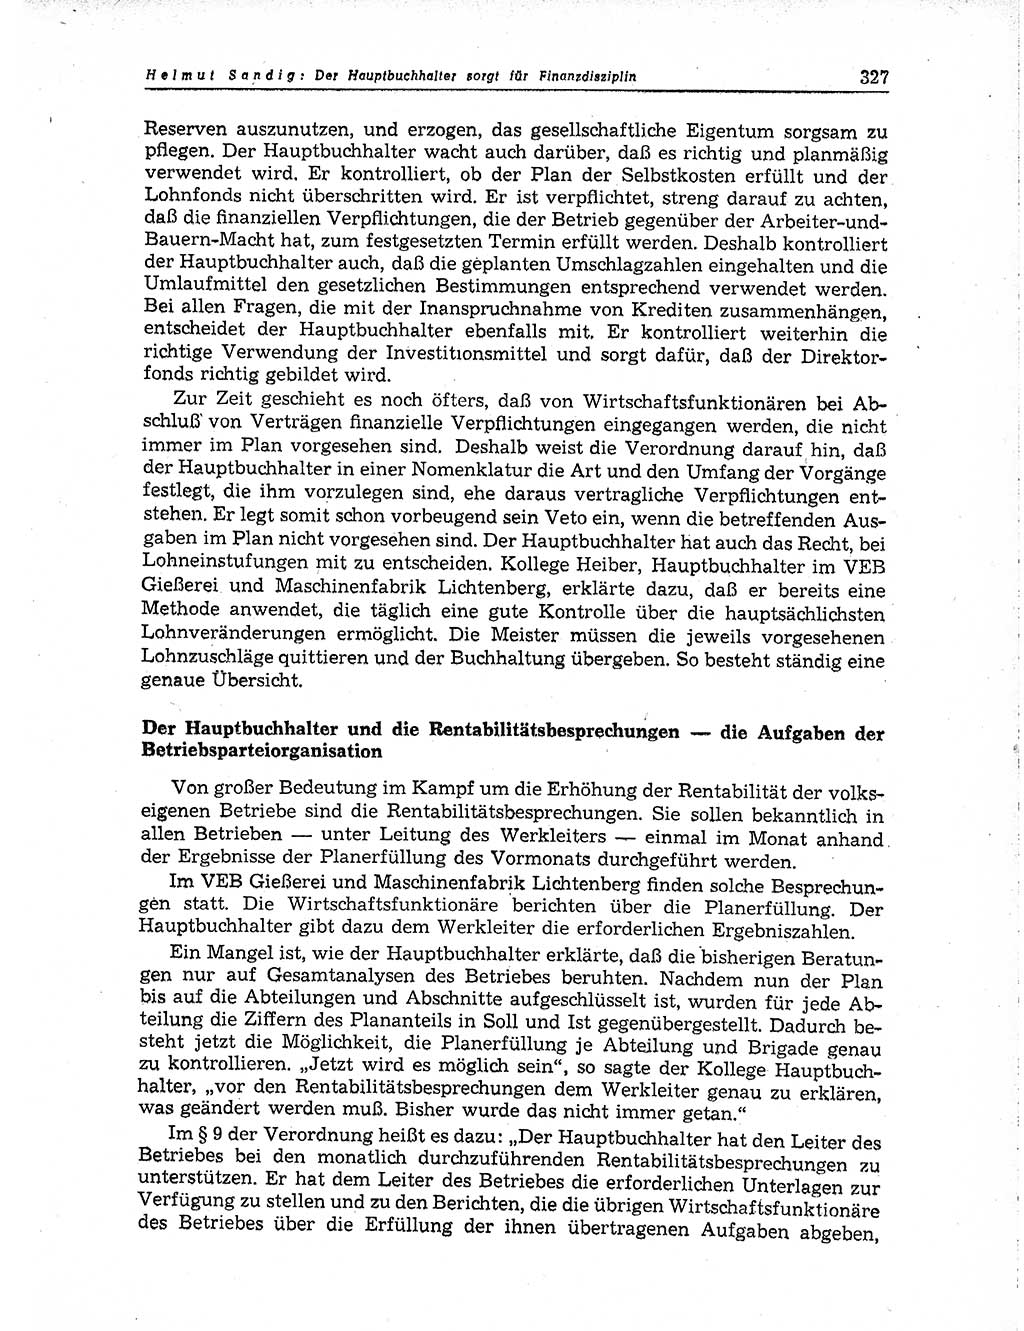 Neuer Weg (NW), Organ des Zentralkomitees (ZK) der SED (Sozialistische Einheitspartei Deutschlands) für Fragen des Parteiaufbaus und des Parteilebens, 10. Jahrgang [Deutsche Demokratische Republik (DDR)] 1955, Seite 327 (NW ZK SED DDR 1955, S. 327)